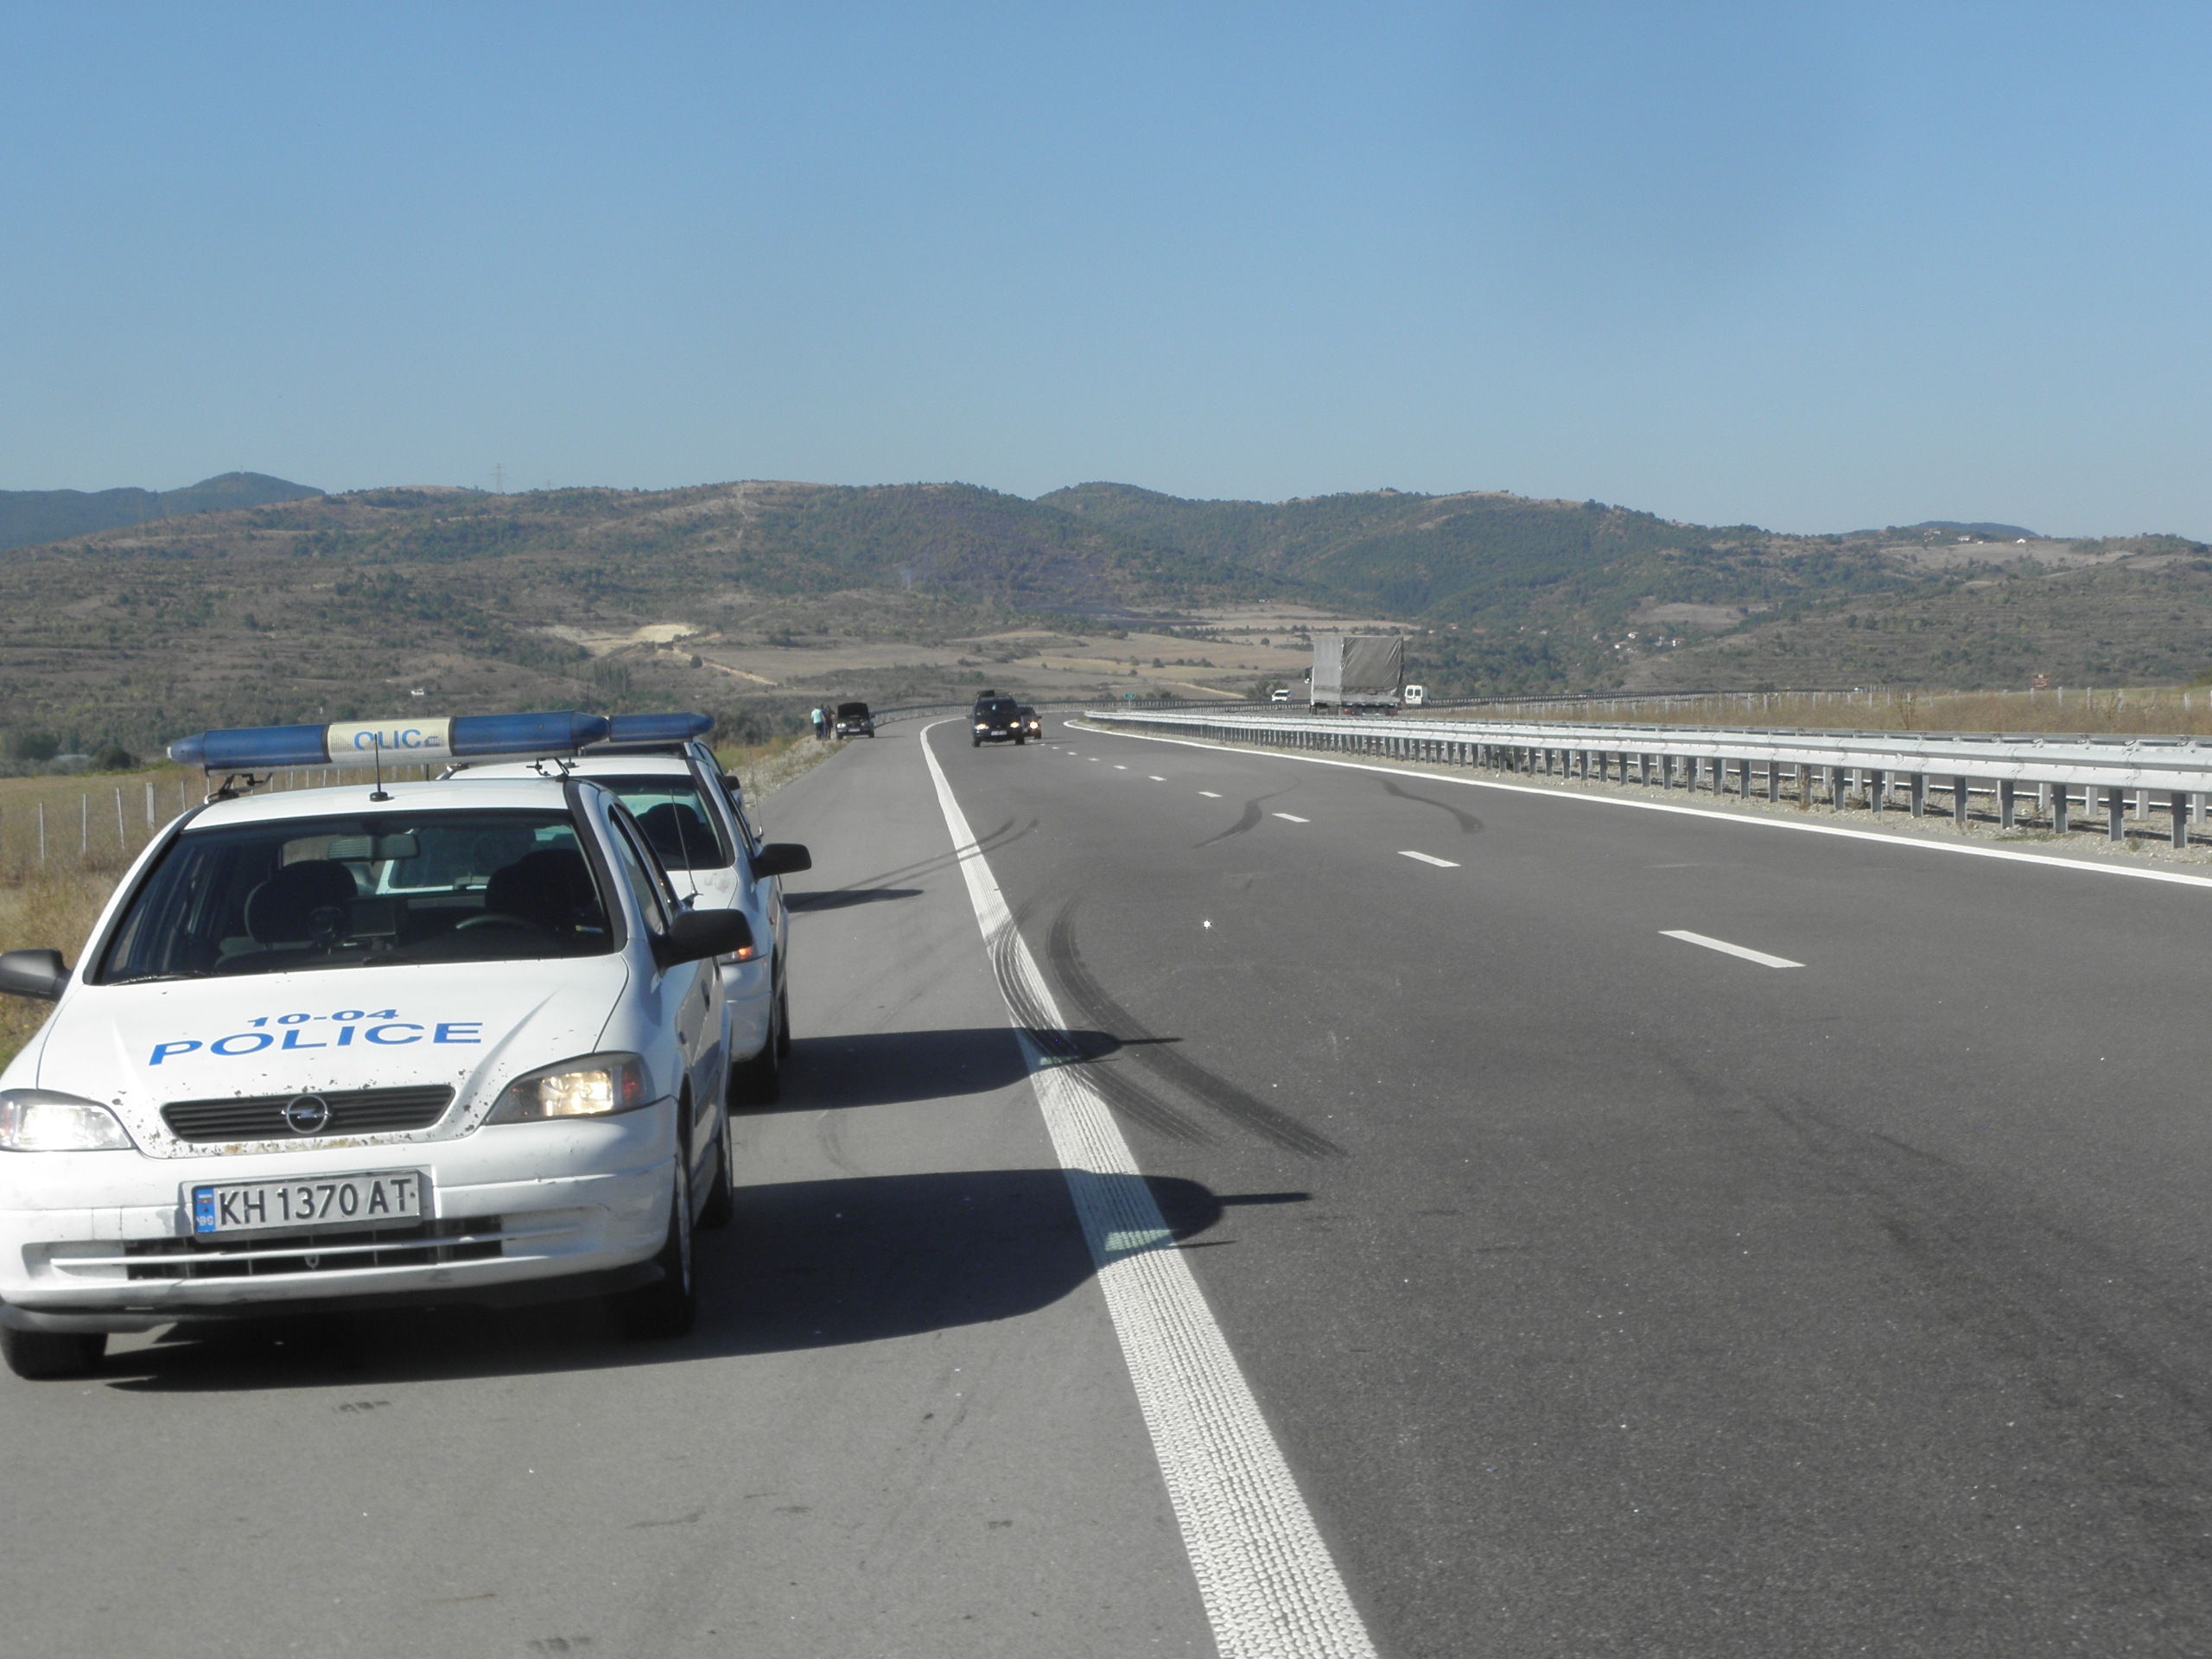 Лек автомобил с плевенска регистрация катастрофира на автомагистрала "Струма". При катастрофата има петима пострадали.